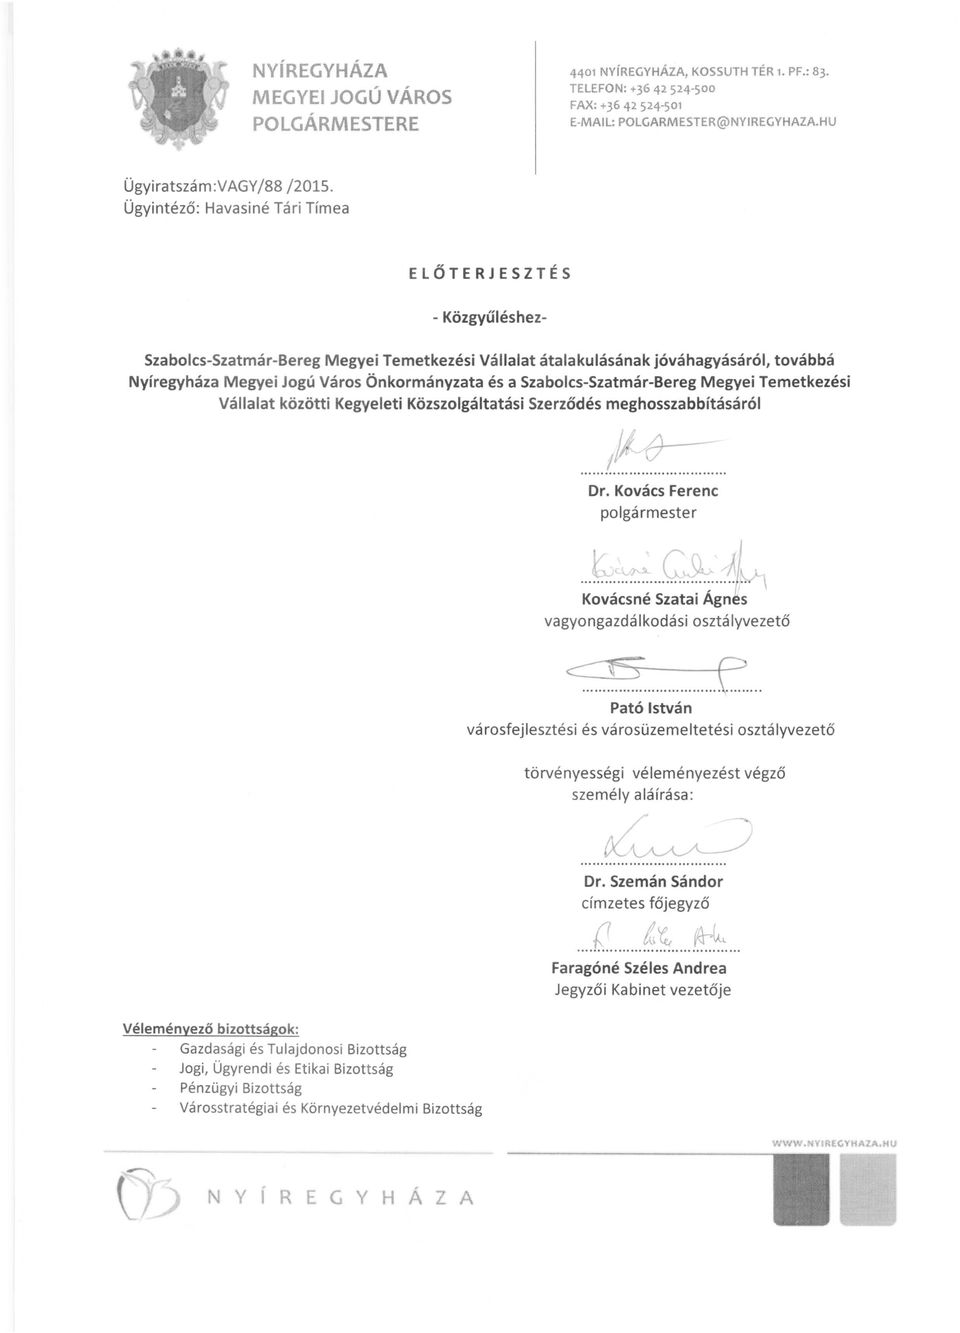 Szabolcs-Szatmár-Bereg Megyei Temetkezési Vállalat közötti Kegyeleti Közszolgáltatási Szerződés meghosszabbításáról...!~~... polgármester...tt:.